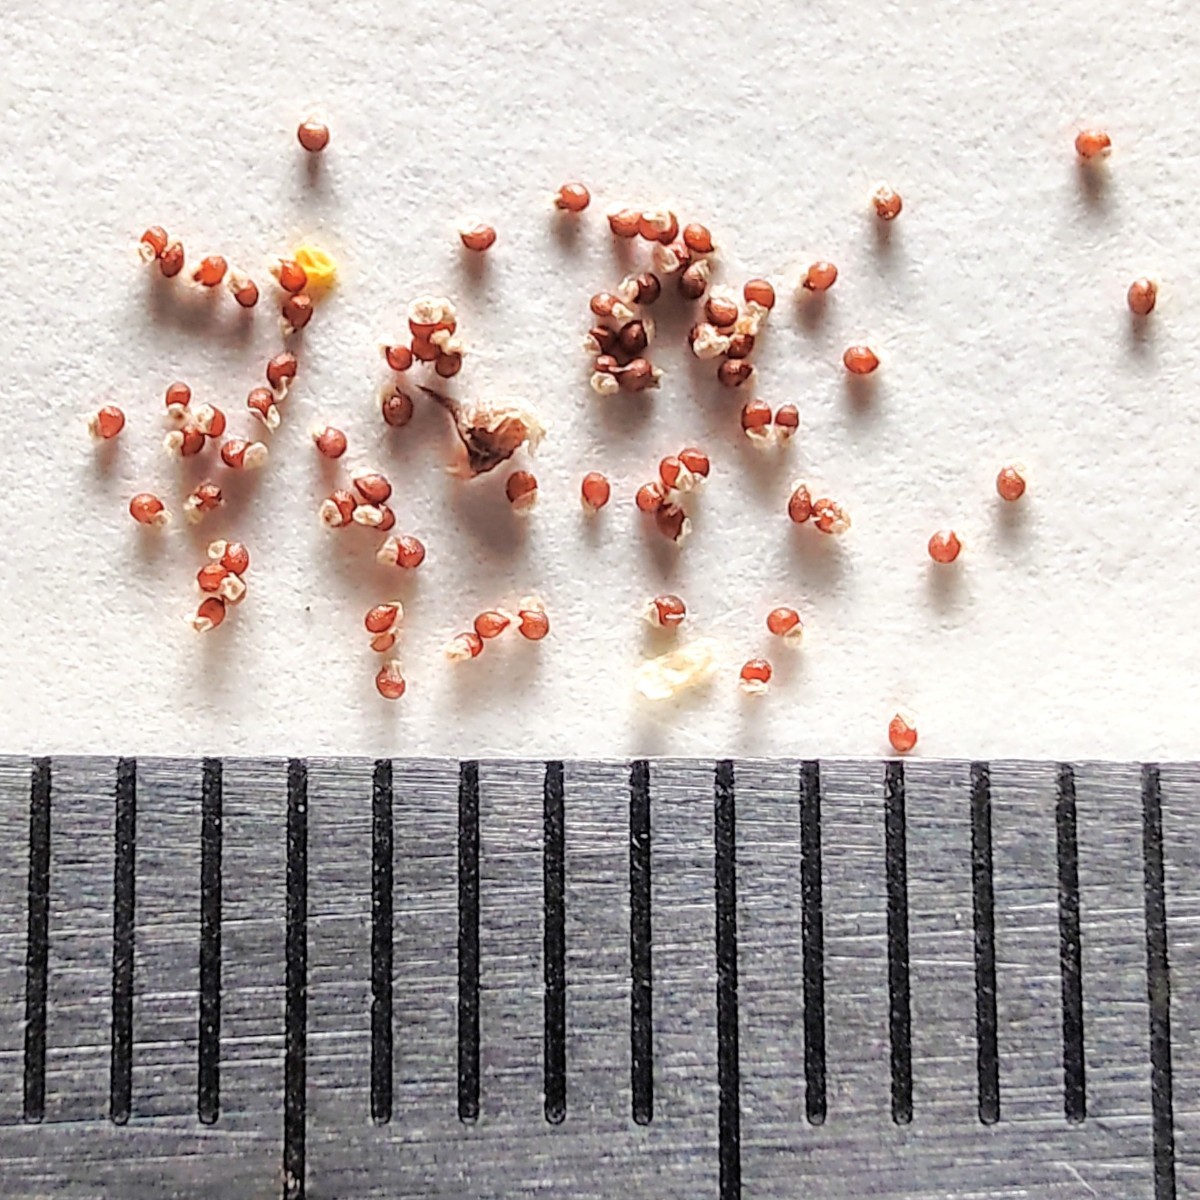 【自家採種“種子”/50粒】Strombocactus disciformis (SB 174)/ストロンボカクタス 菊水//サボテン/多肉植物/フィールドナンバー付_お送りする種子のイメージ